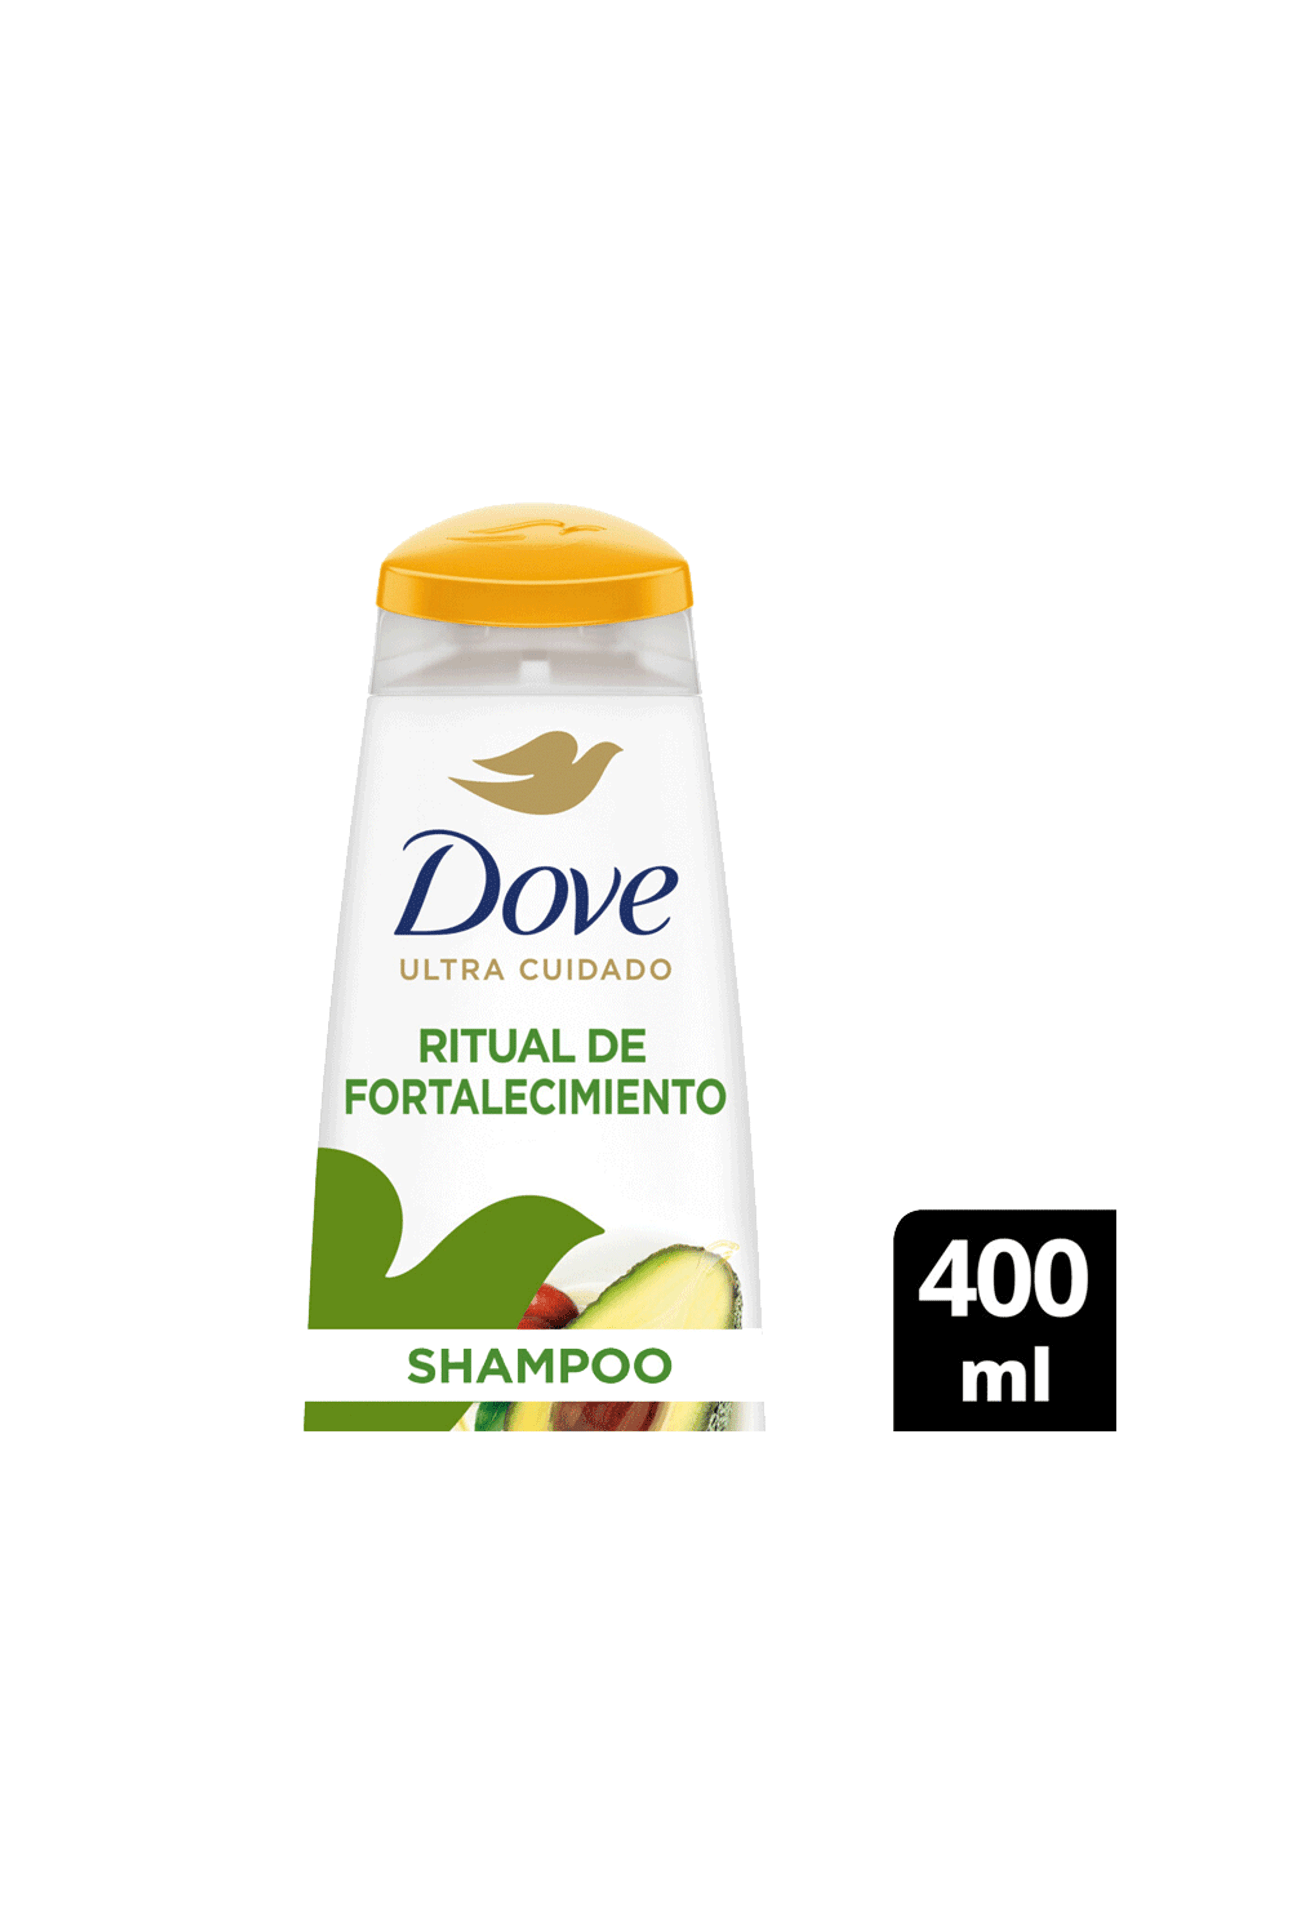 Dove-Shampoo-Dove-Ritual-De-Fortalecimiento-Palta-x-400ml-7791293047454_img1